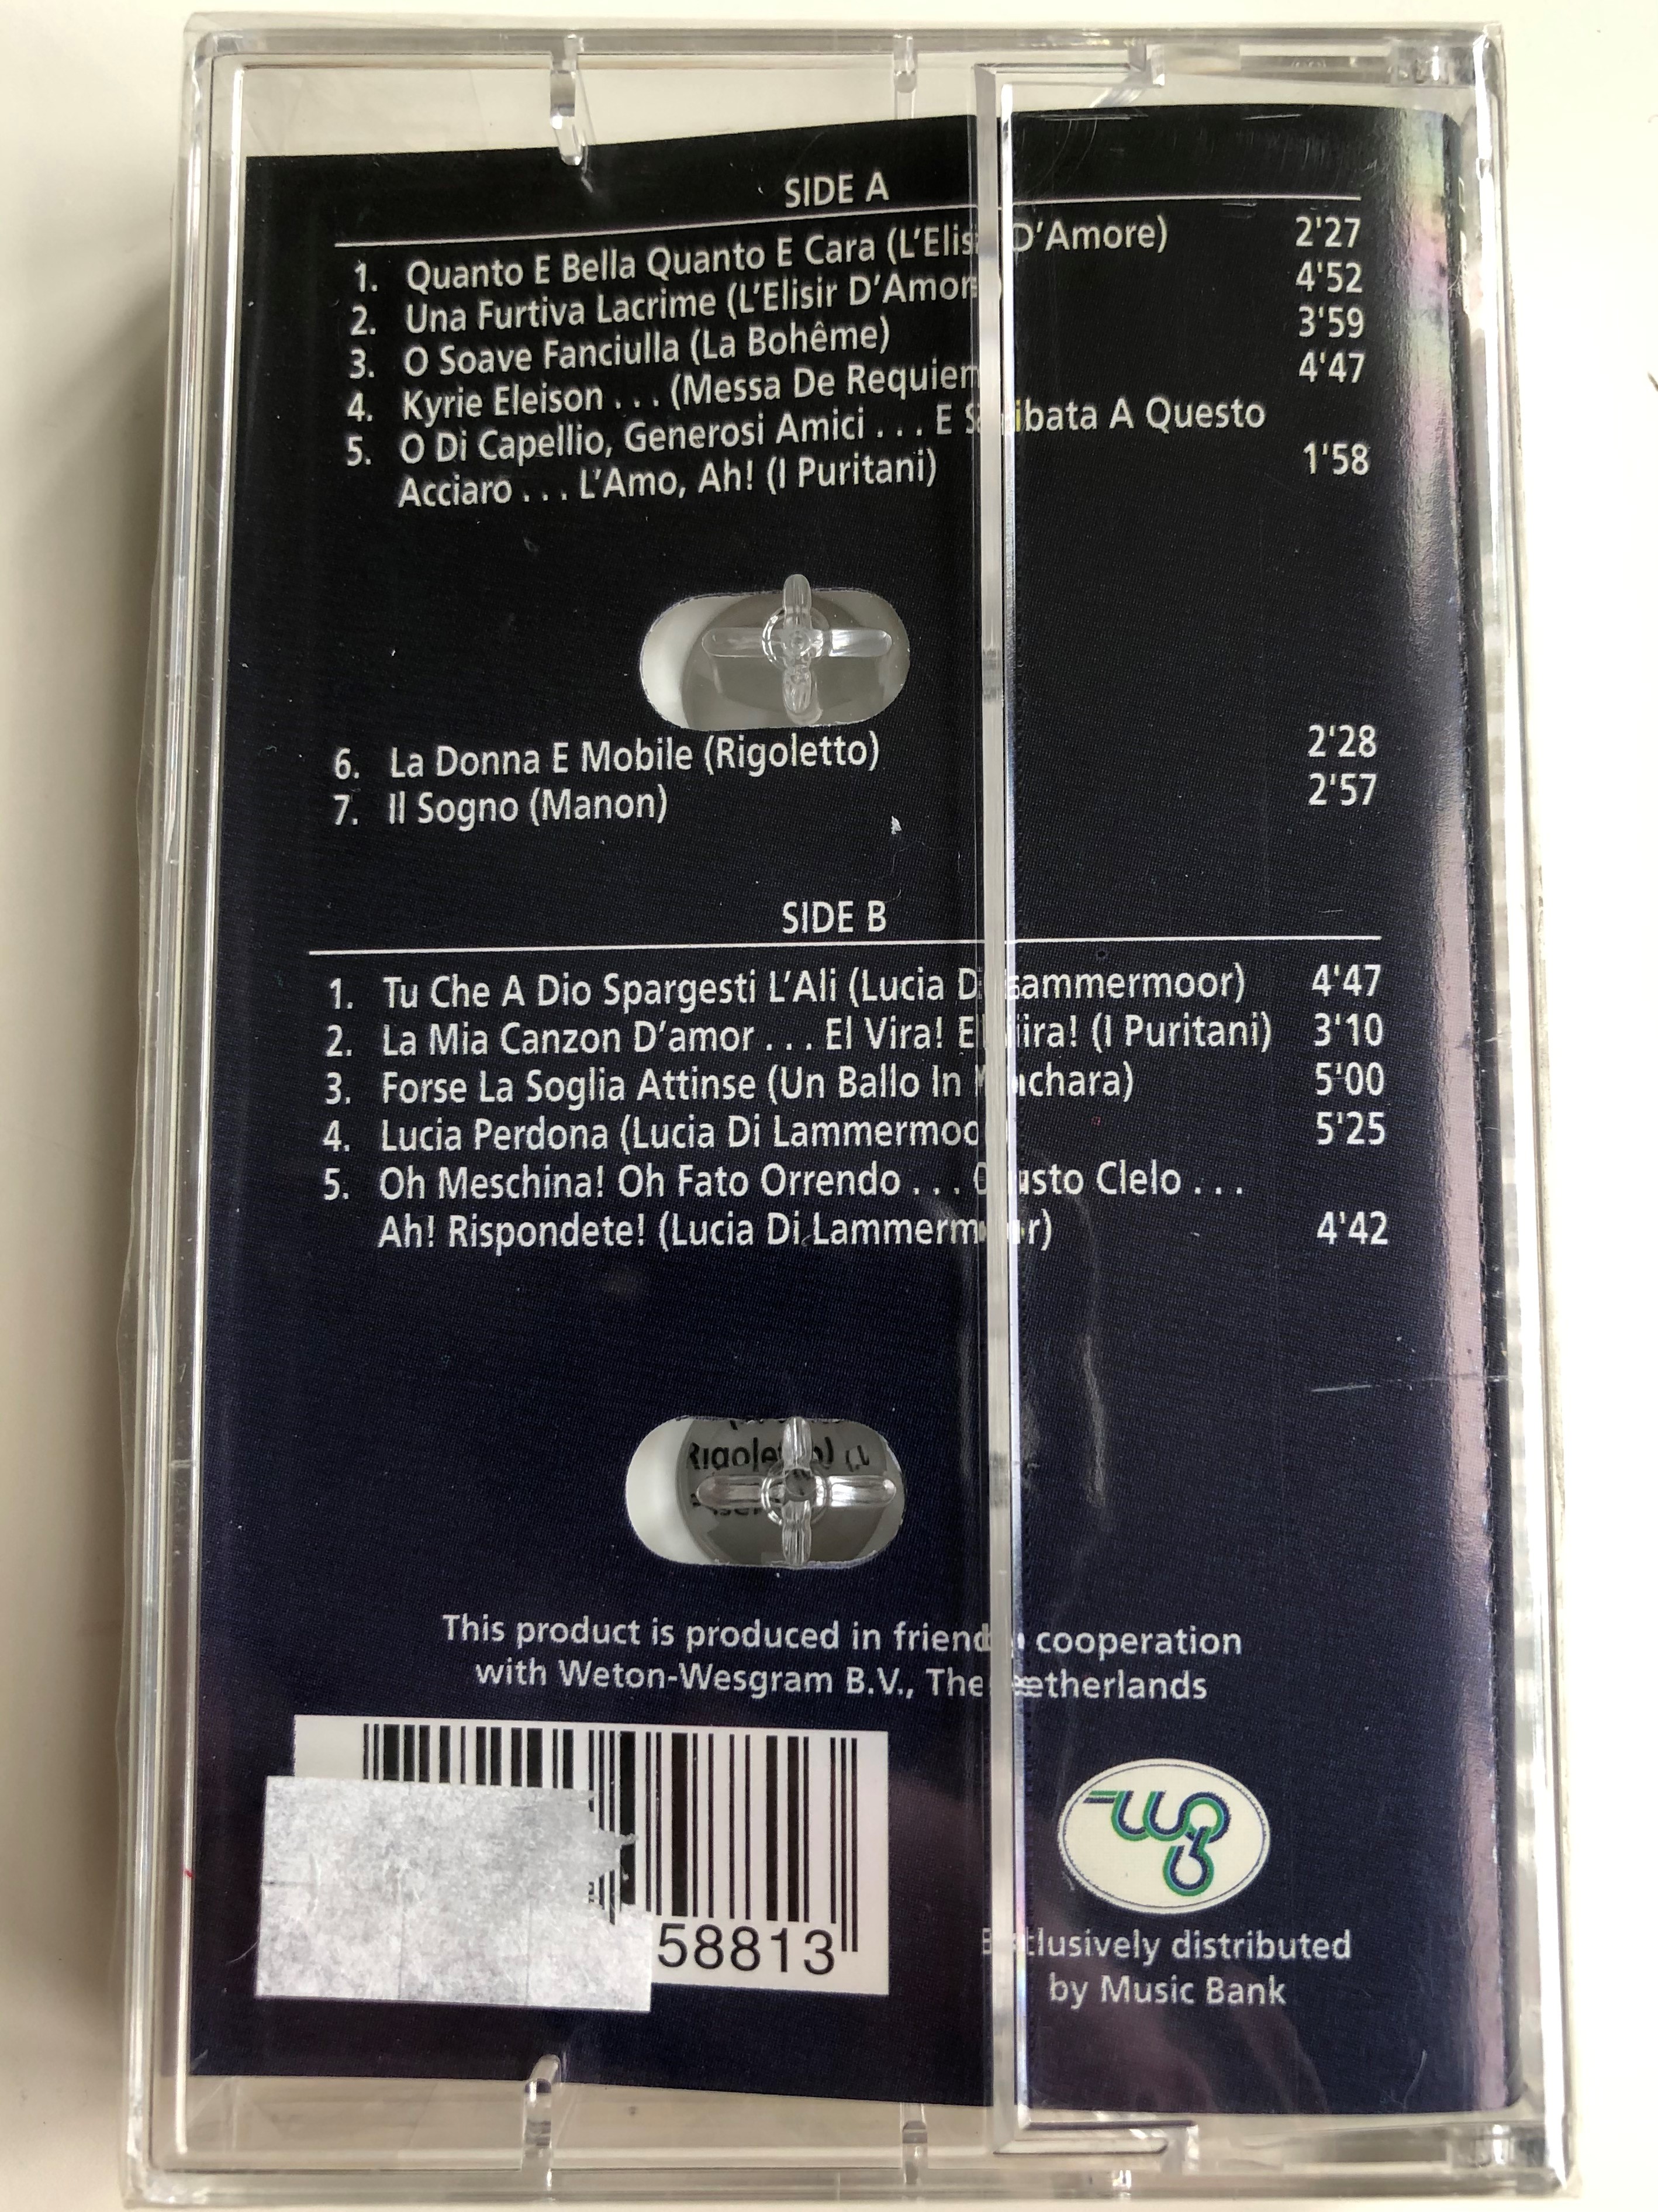 luciano-pavarotti-quanto-e-bella-quanto-e-cara-la-donna-e-mobile-une-furtiva-lacrima-o-soave-fanciulla-weton-wesgram-audio-cassette-rdmc016-3-.jpg